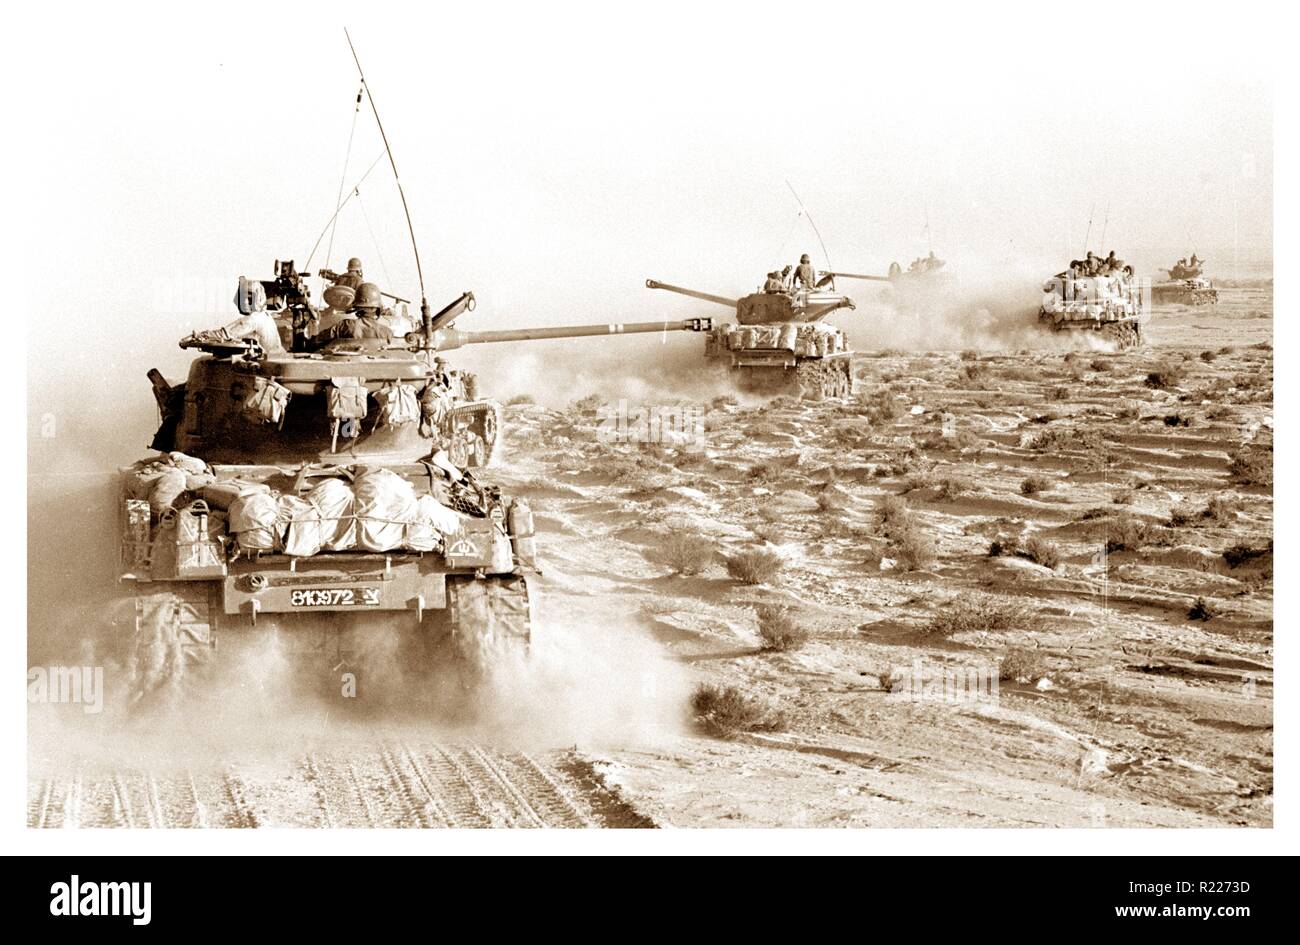 Carri armati israeliani accelerando verso egiziano posizioni militari nella penisola del Sinai durante la guerra dei sei giorni 1967 giugno 4 Foto Stock